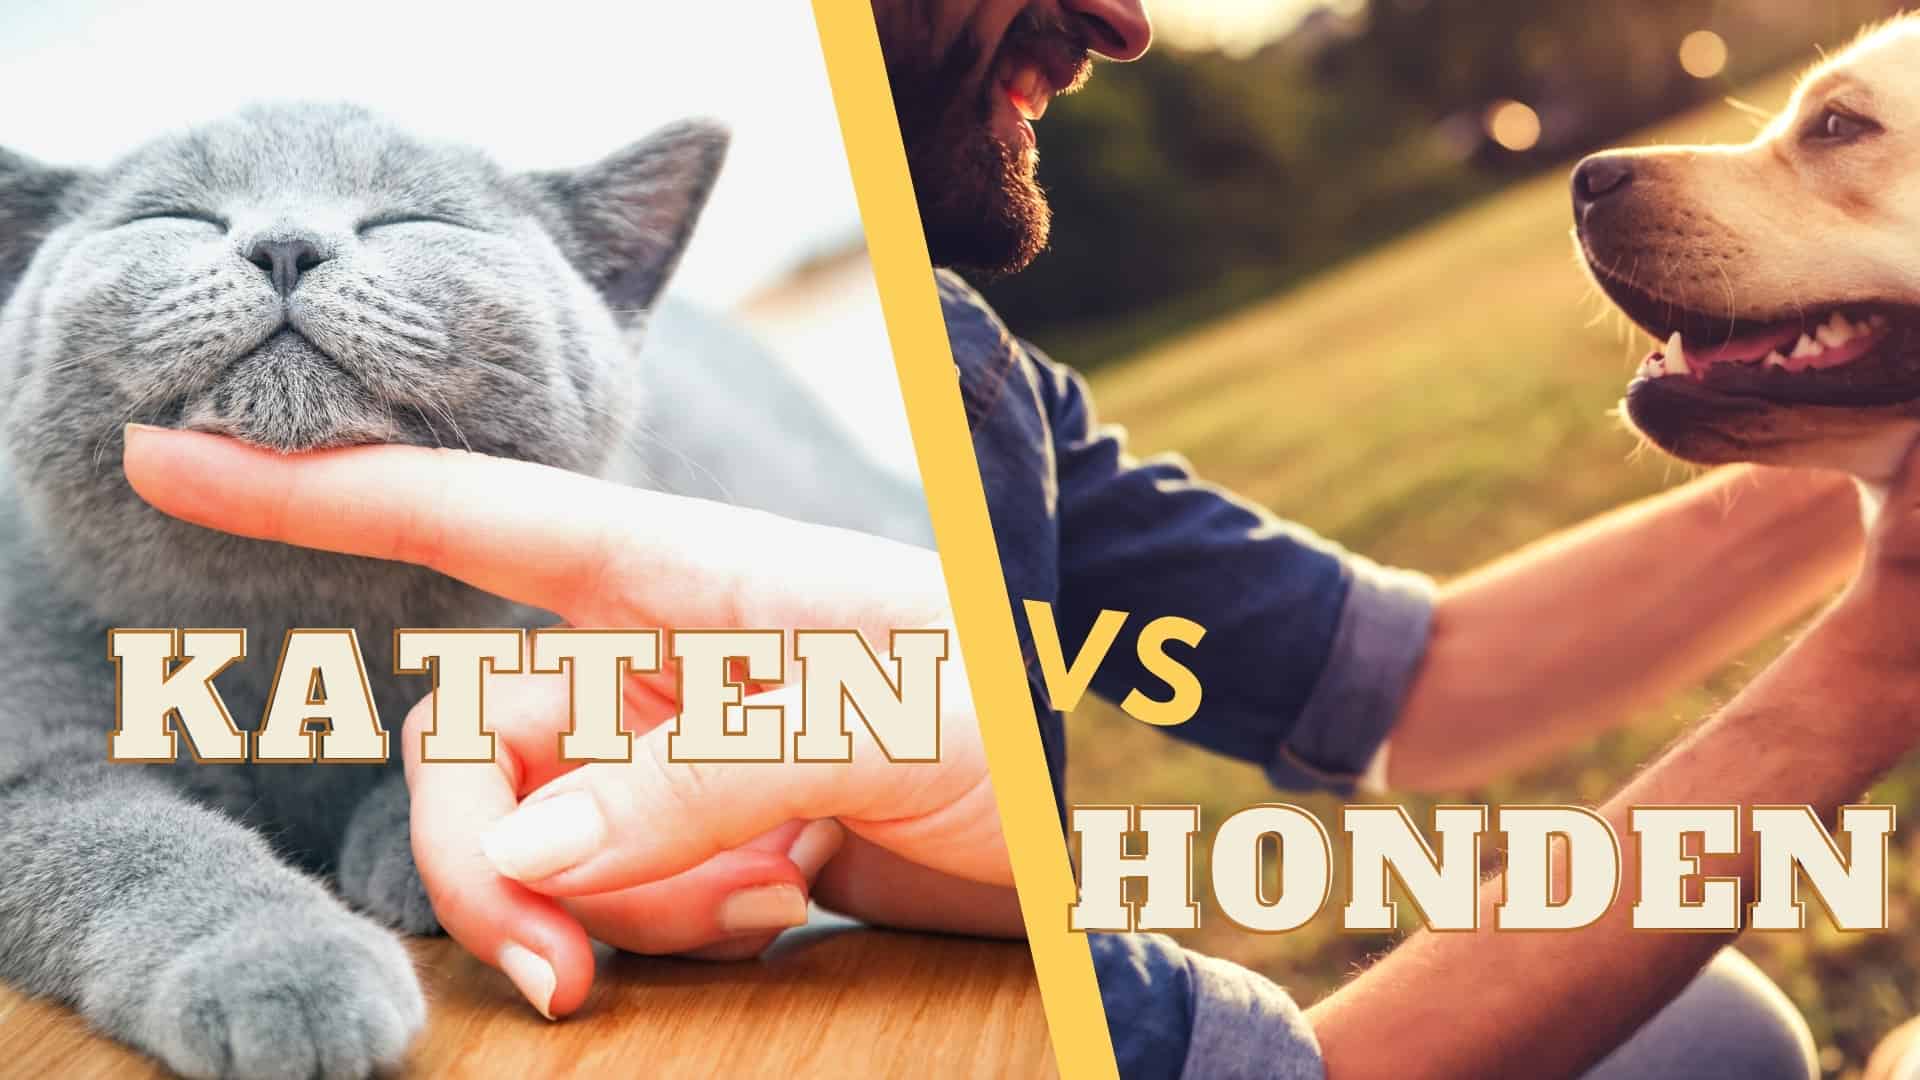 Katten vs honden wat moet je kiezen